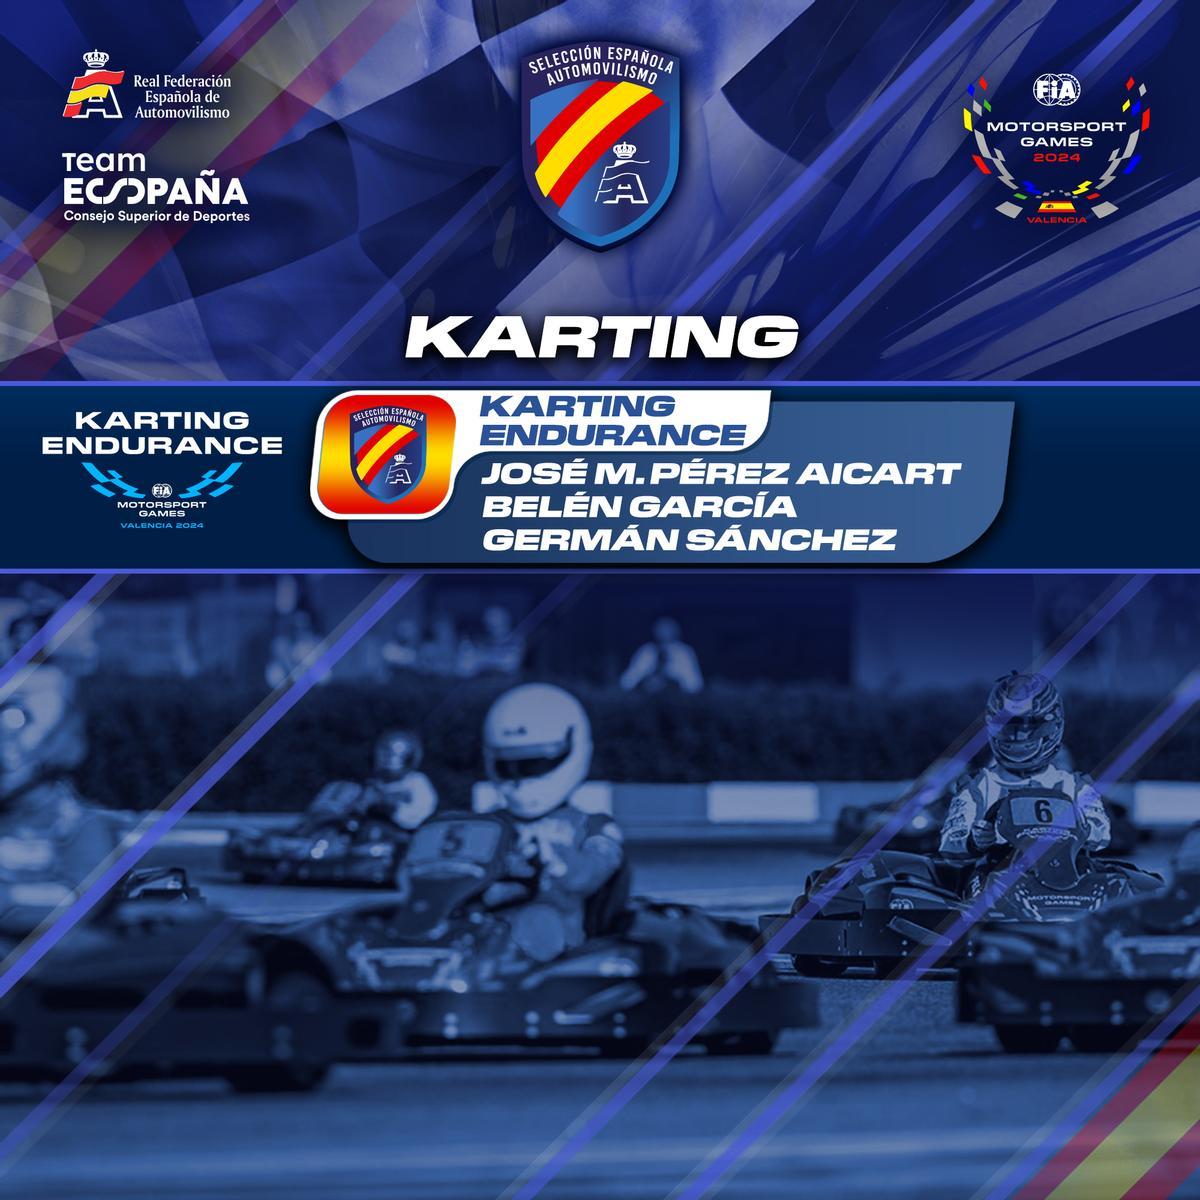 Convocatoria española de Karting Endurance FIAMGames